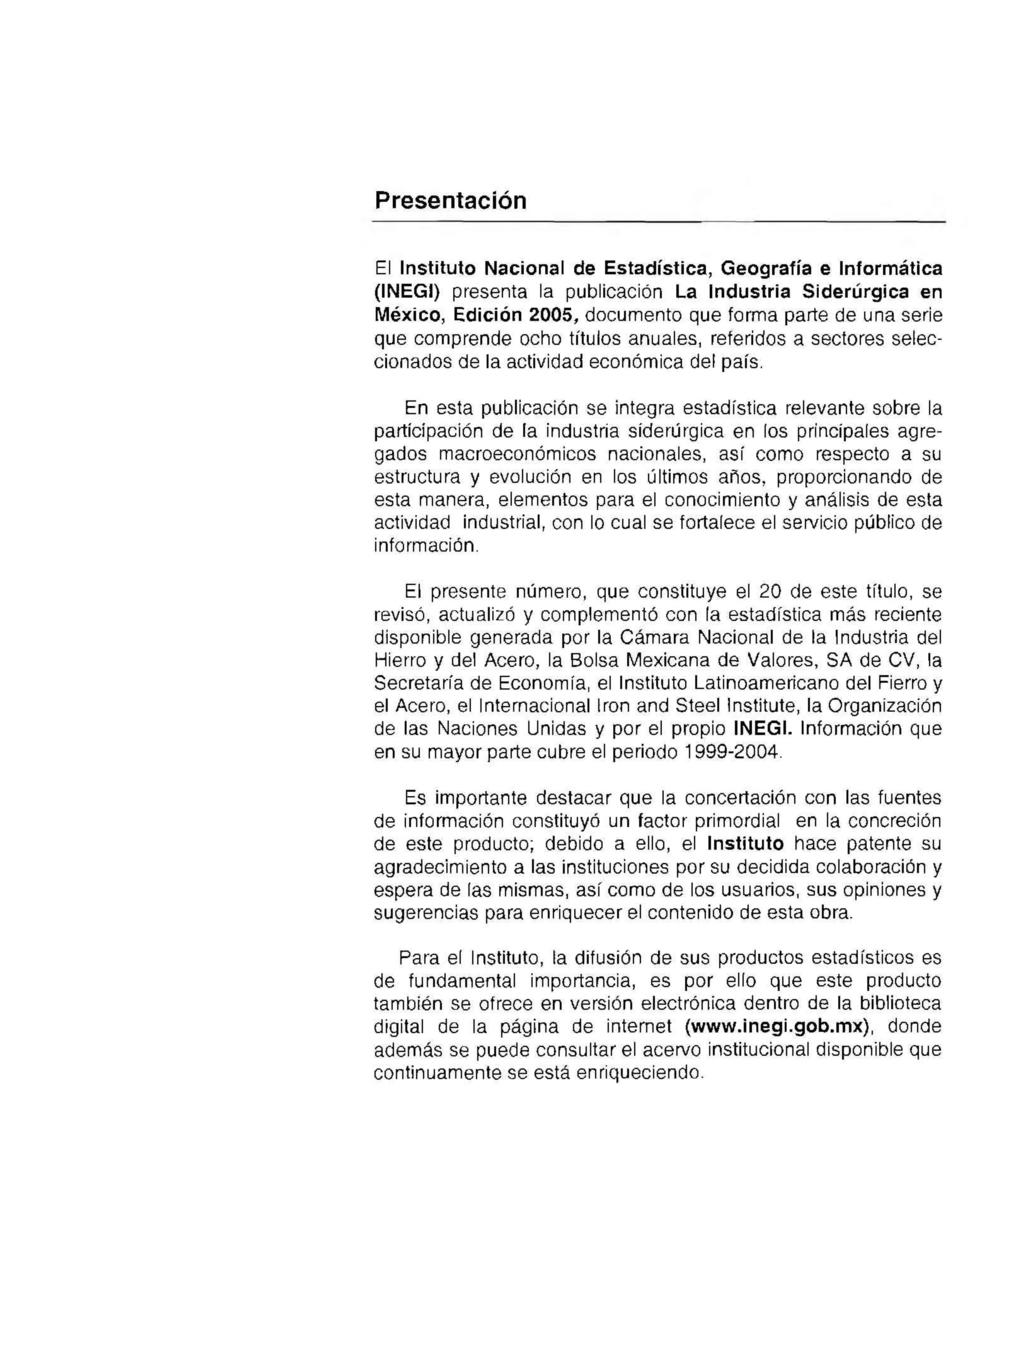 Presentación El Instituto Nacional de Estadística, Geografía e Informática (INEGi) presenta la publicación La Industria Siderúrgica en México, Edición 2005, documento que forma parte de una serie que